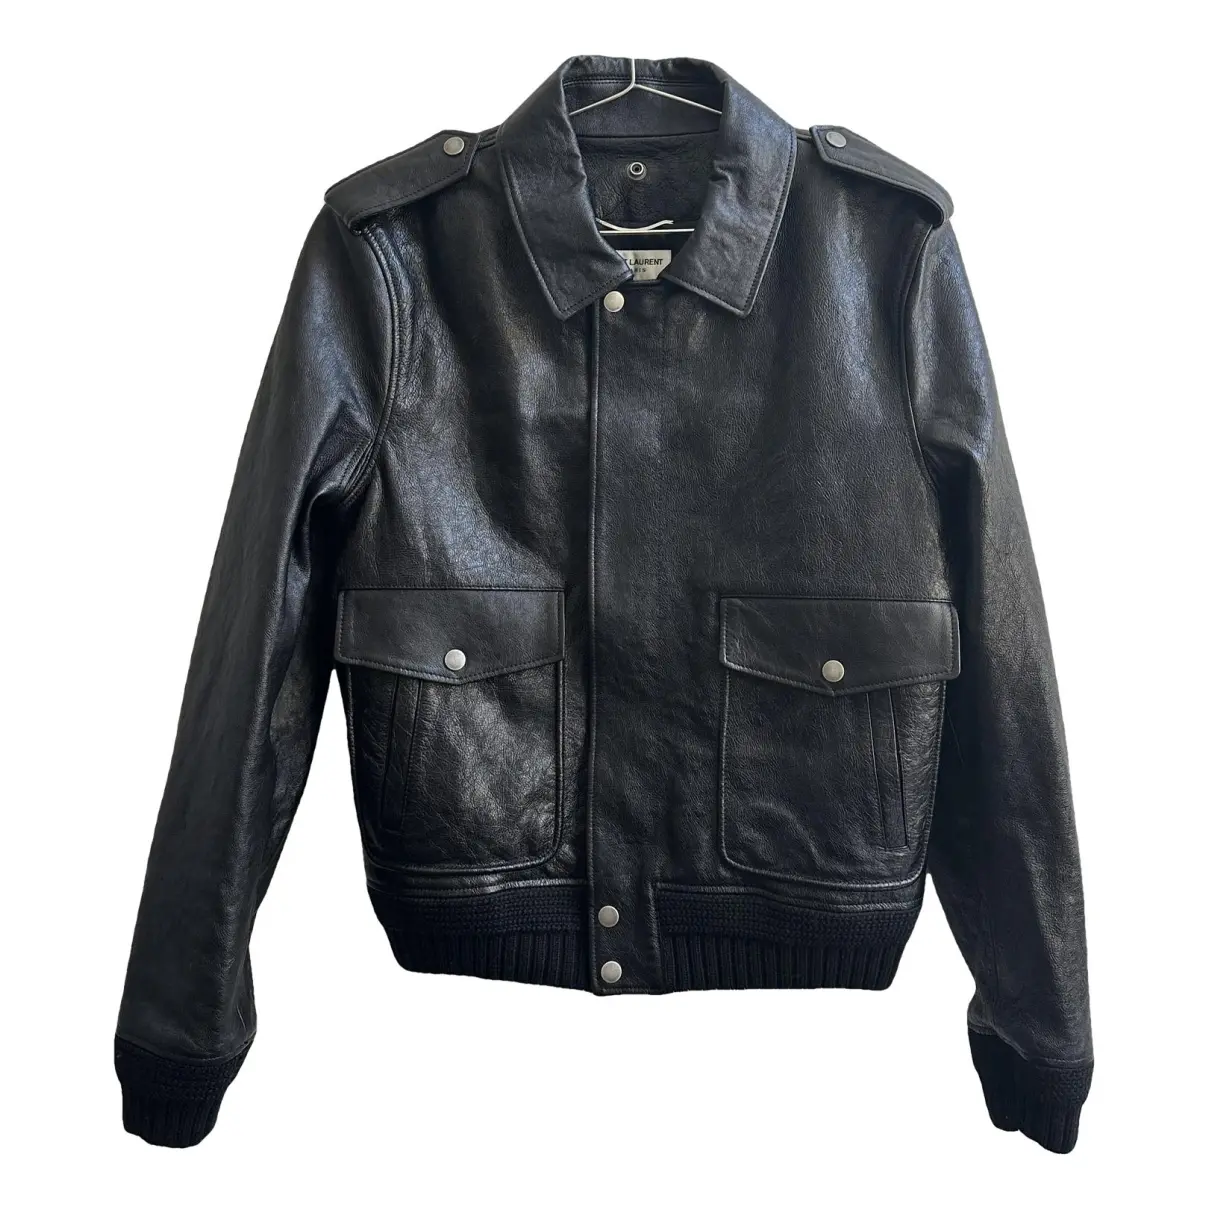 Leather jacket Saint Laurent